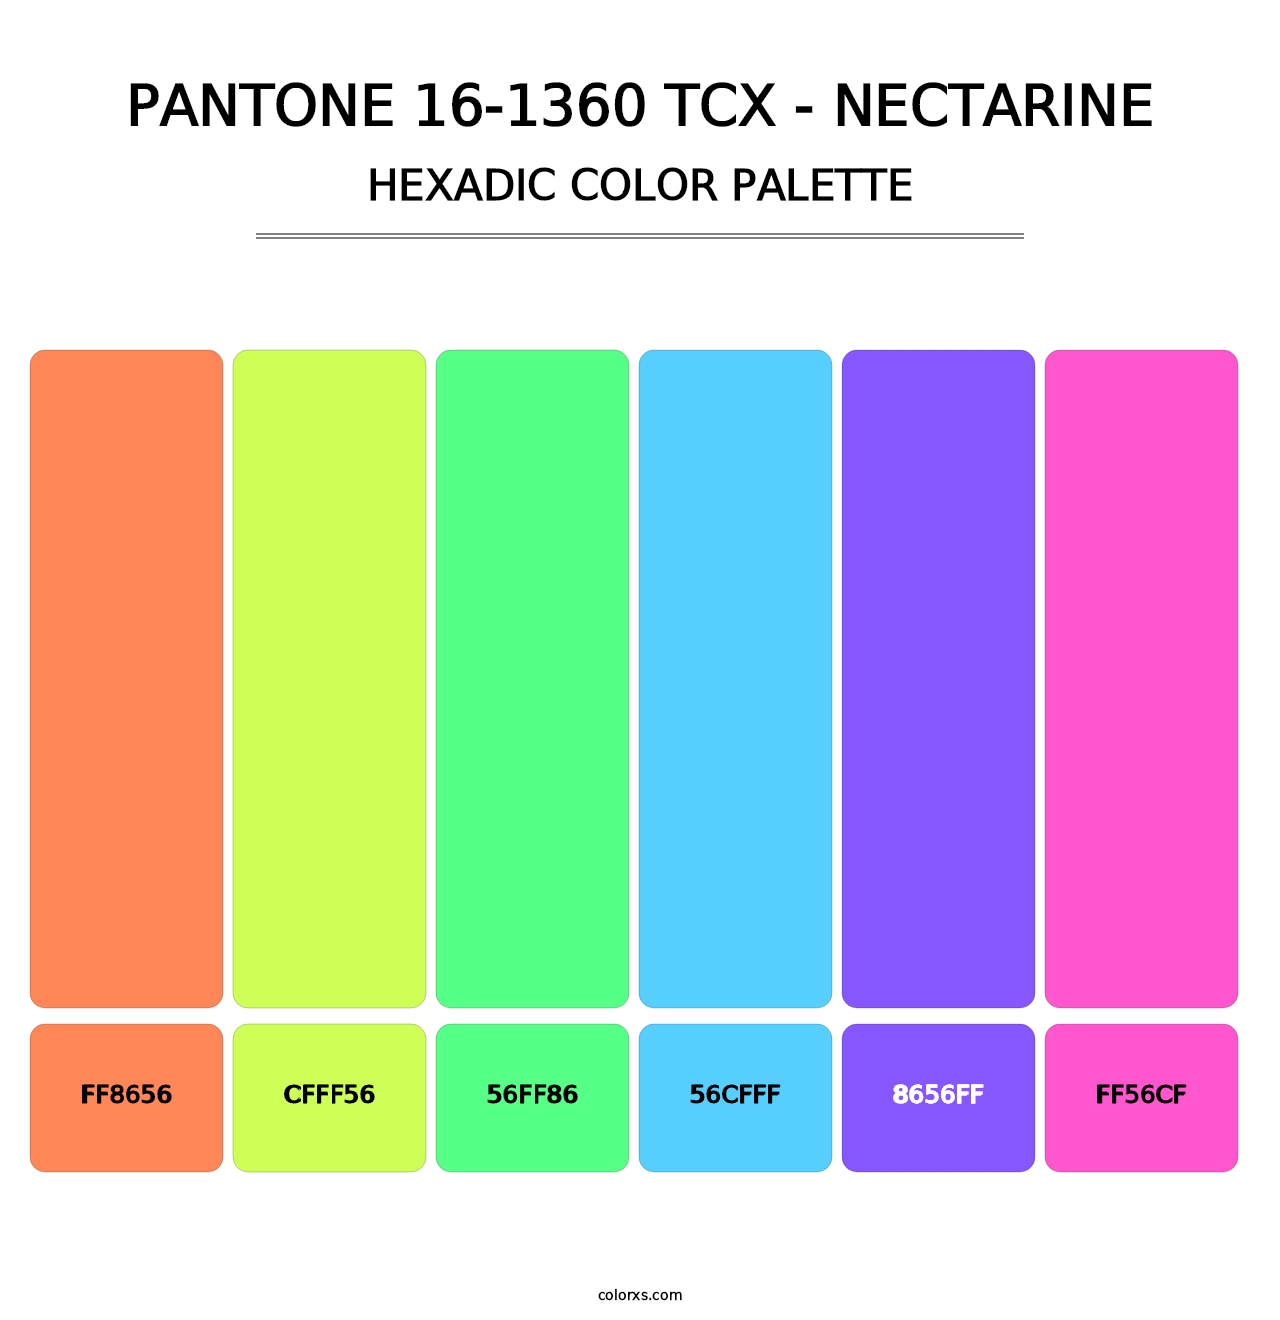 PANTONE 16-1360 TCX - Nectarine - Hexadic Color Palette